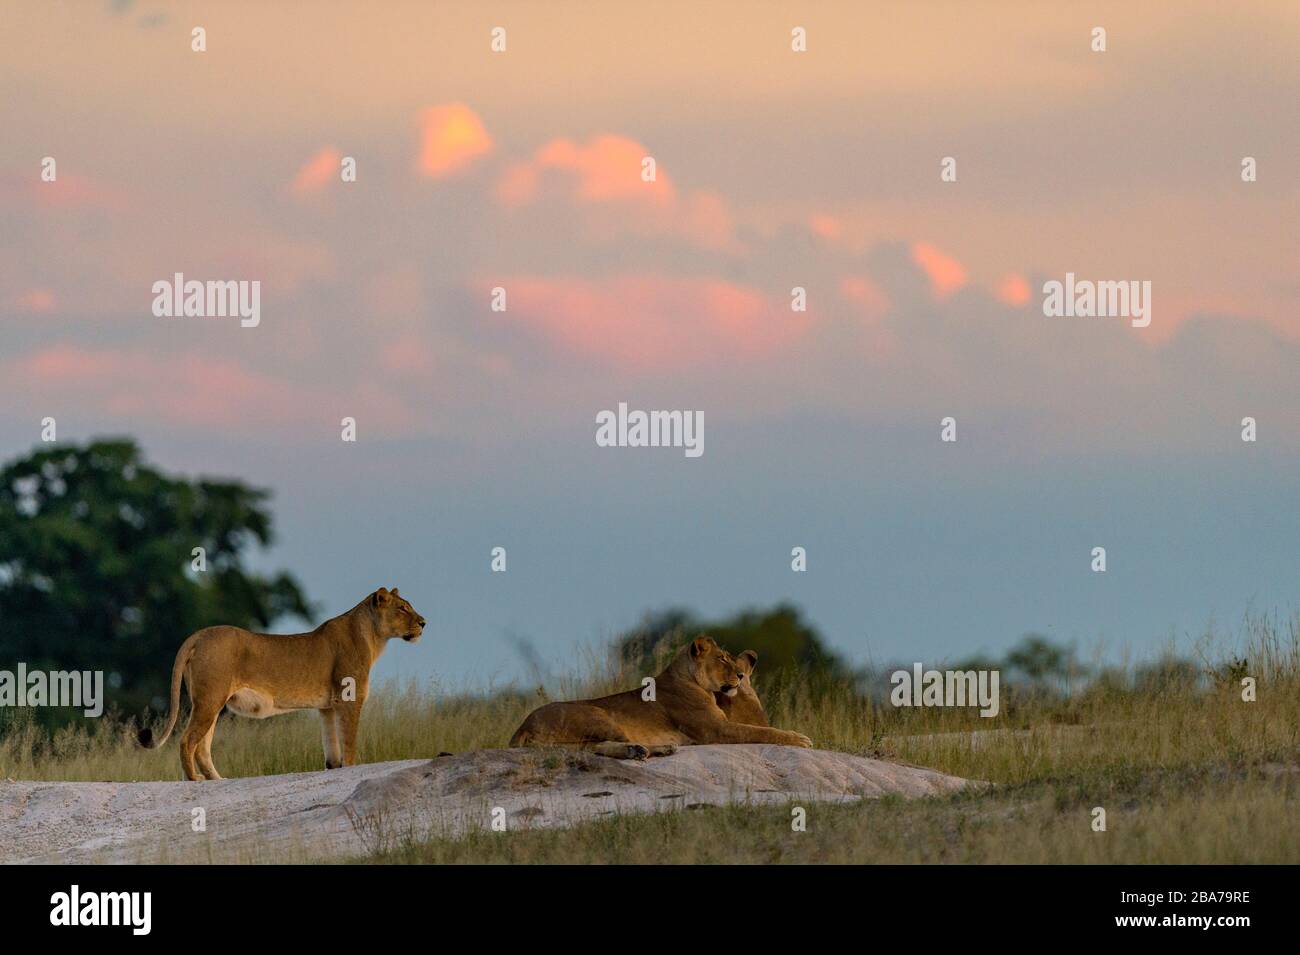 Lions africains Panthera leo vu dans le parc national de Hwange au Zimbabwe. Banque D'Images